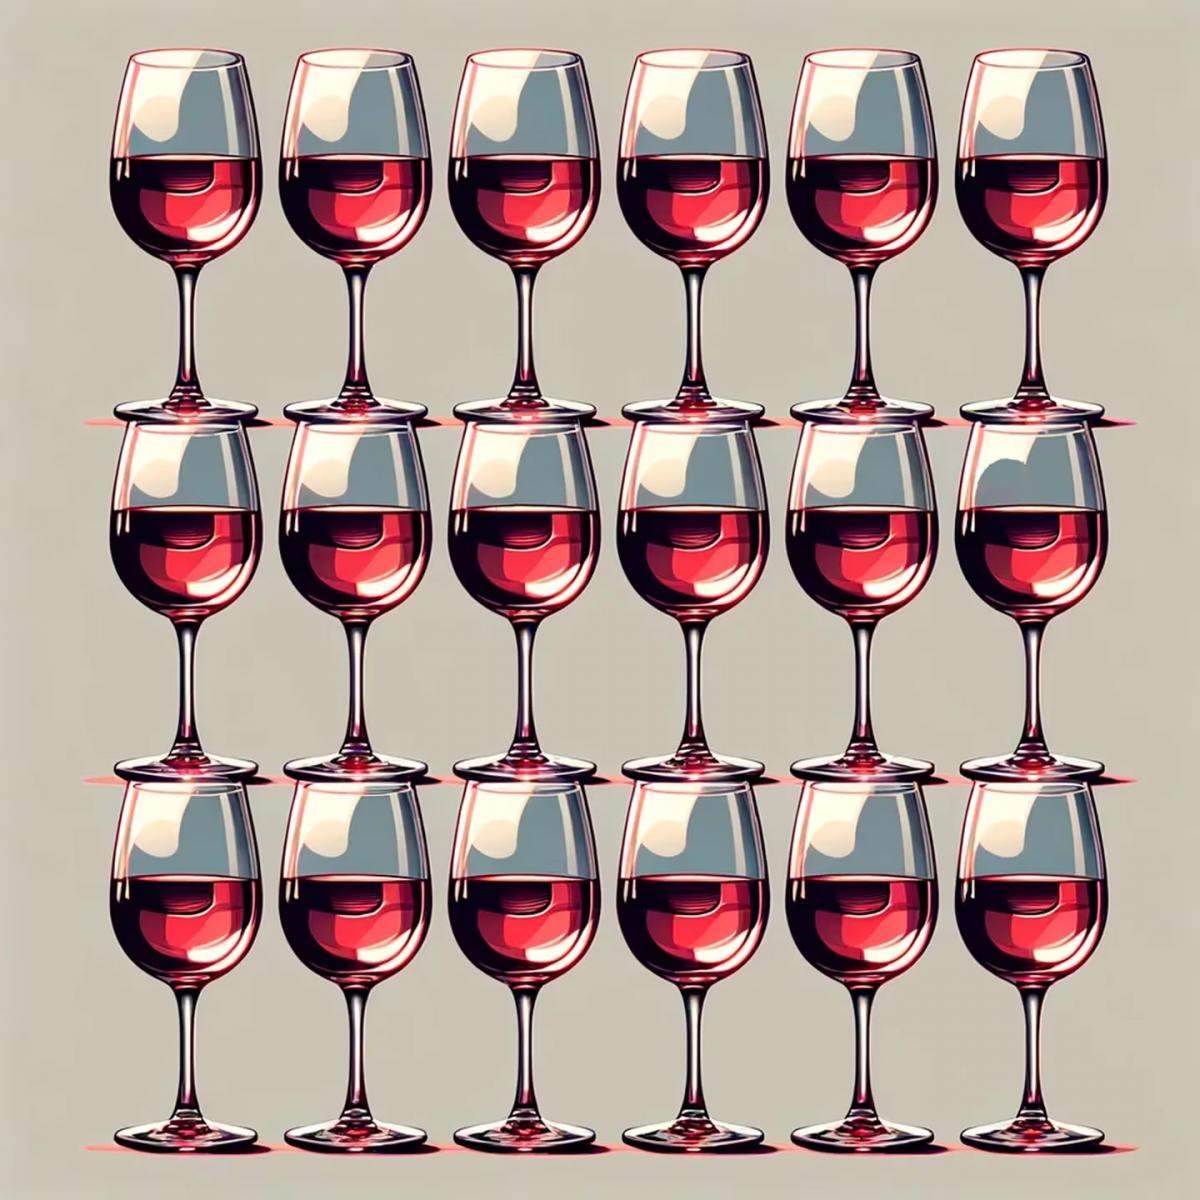 Solo una mente excepcional puede identificar la copa de vino que difiere en la imagen